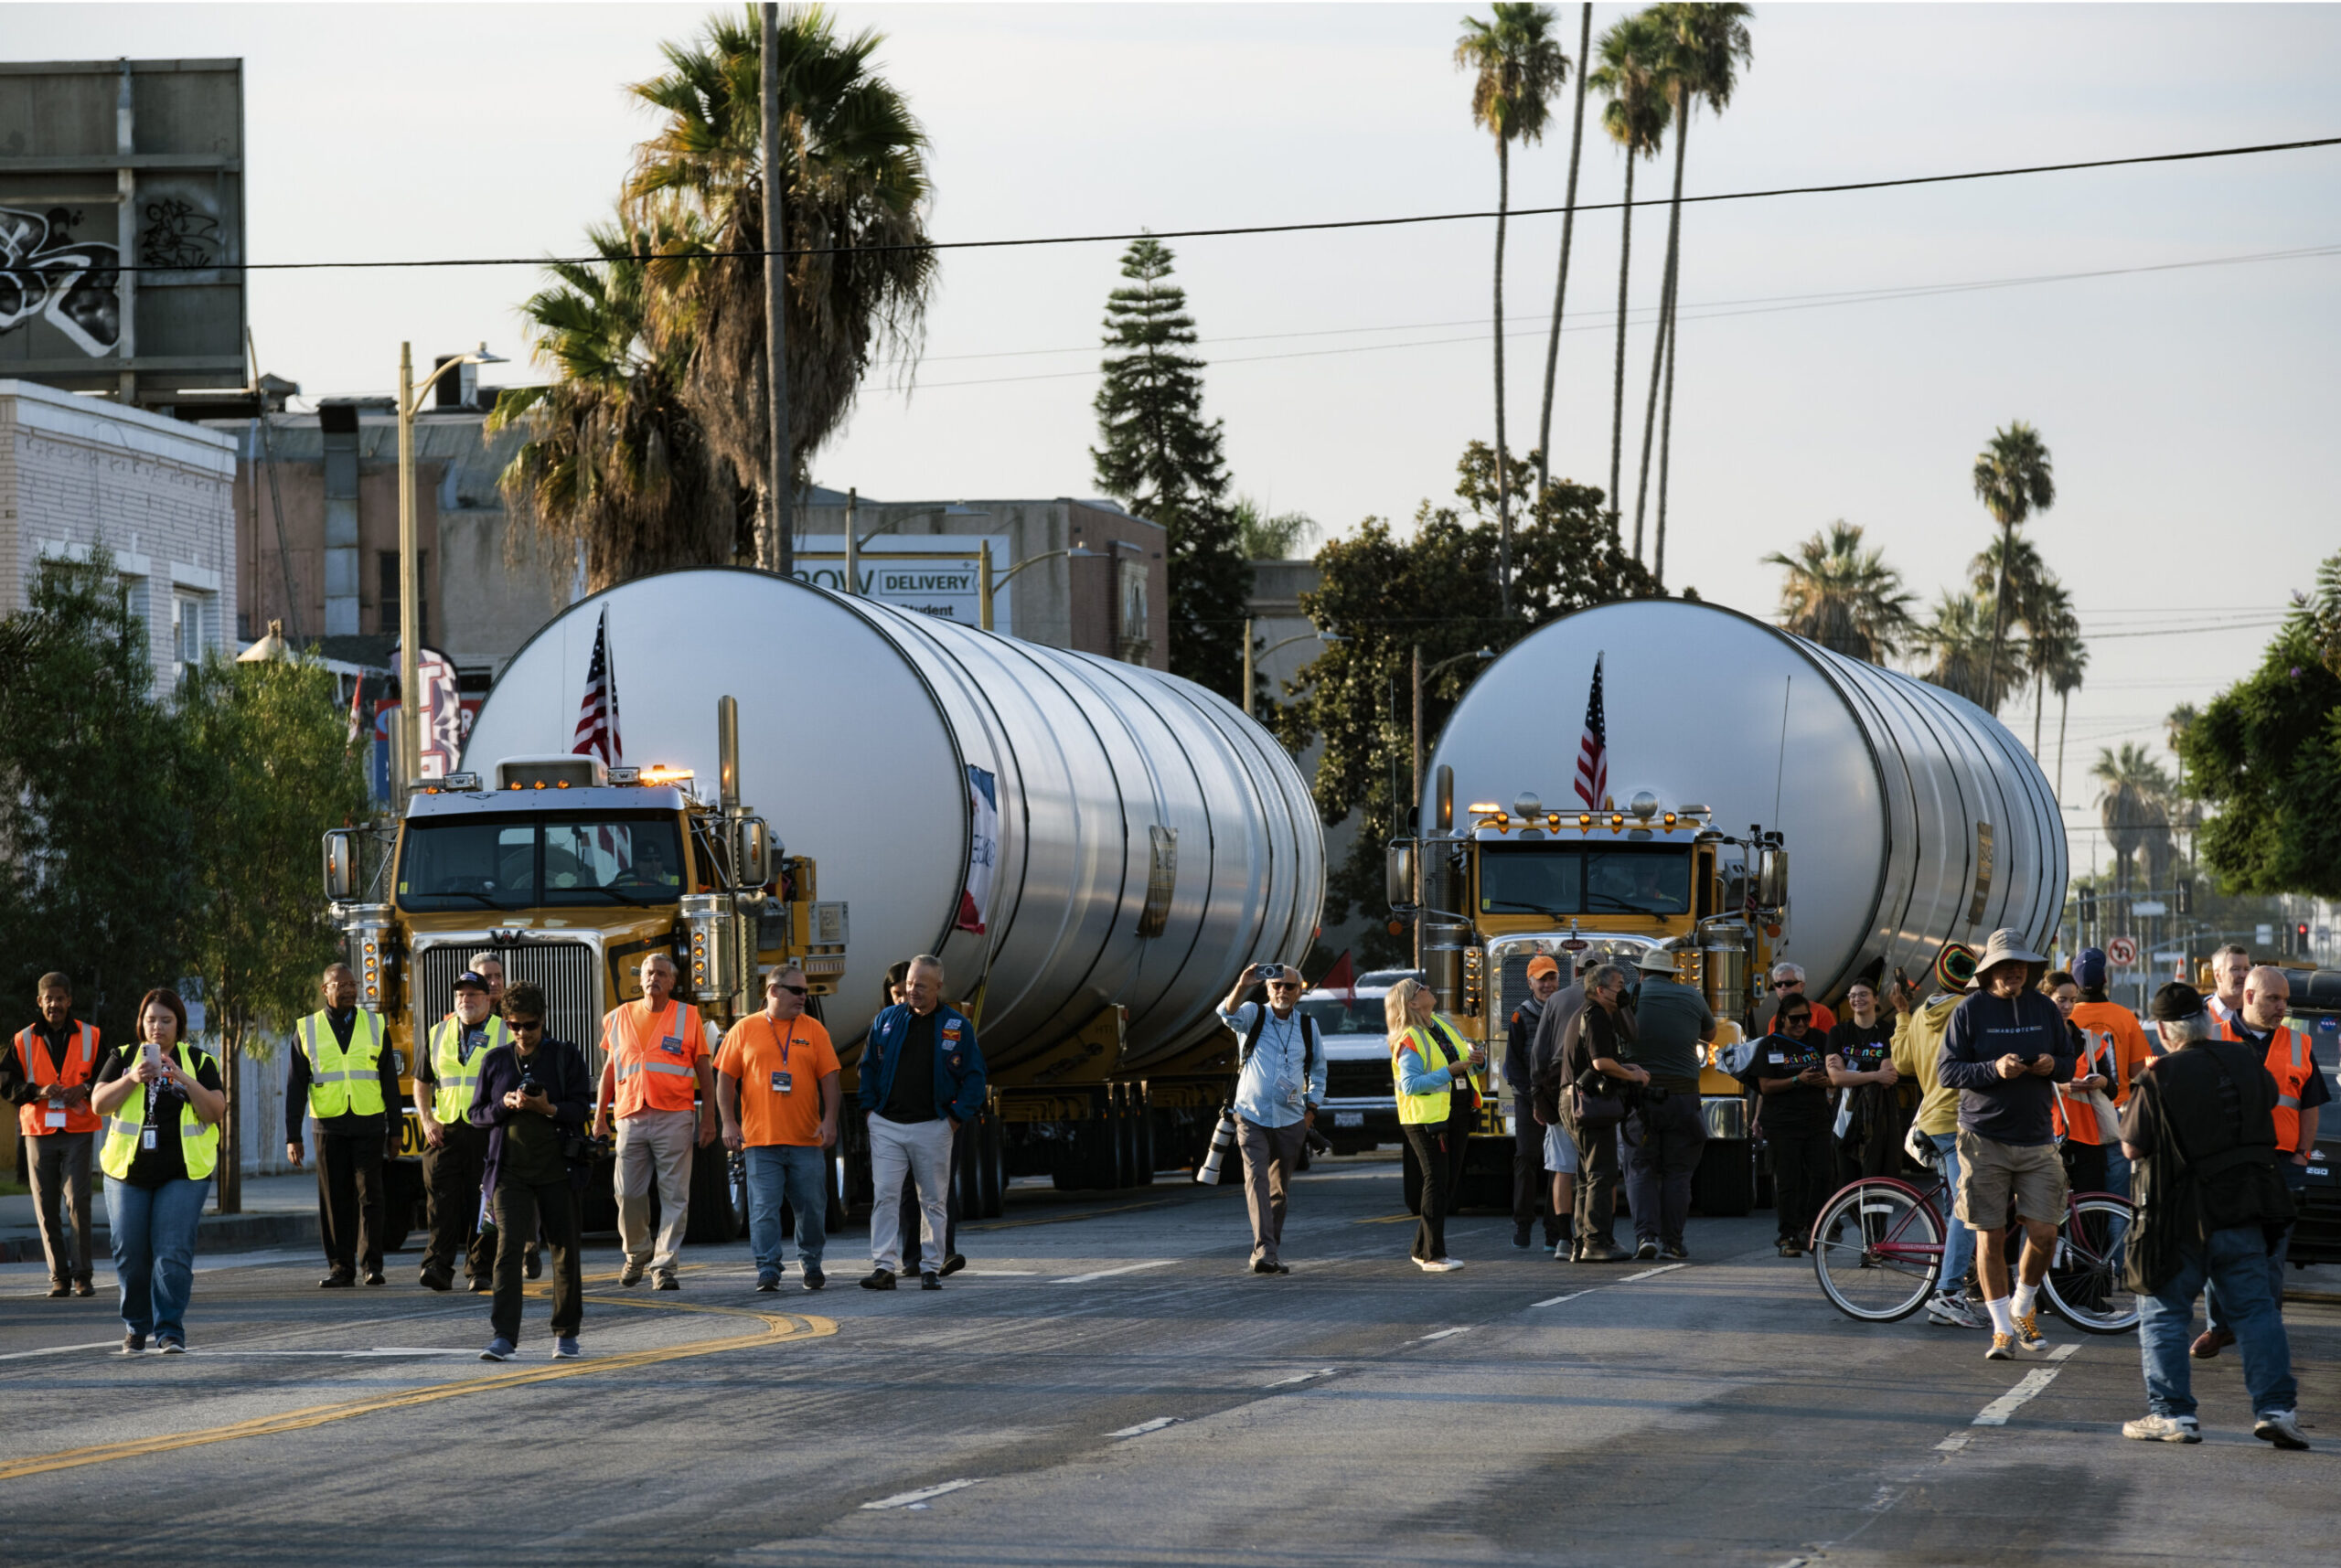 Сотрудники дорожного движения освобождают путь, когда грузовики медленно везут два ракетных двигателя по улице в Лос-Анджелесе